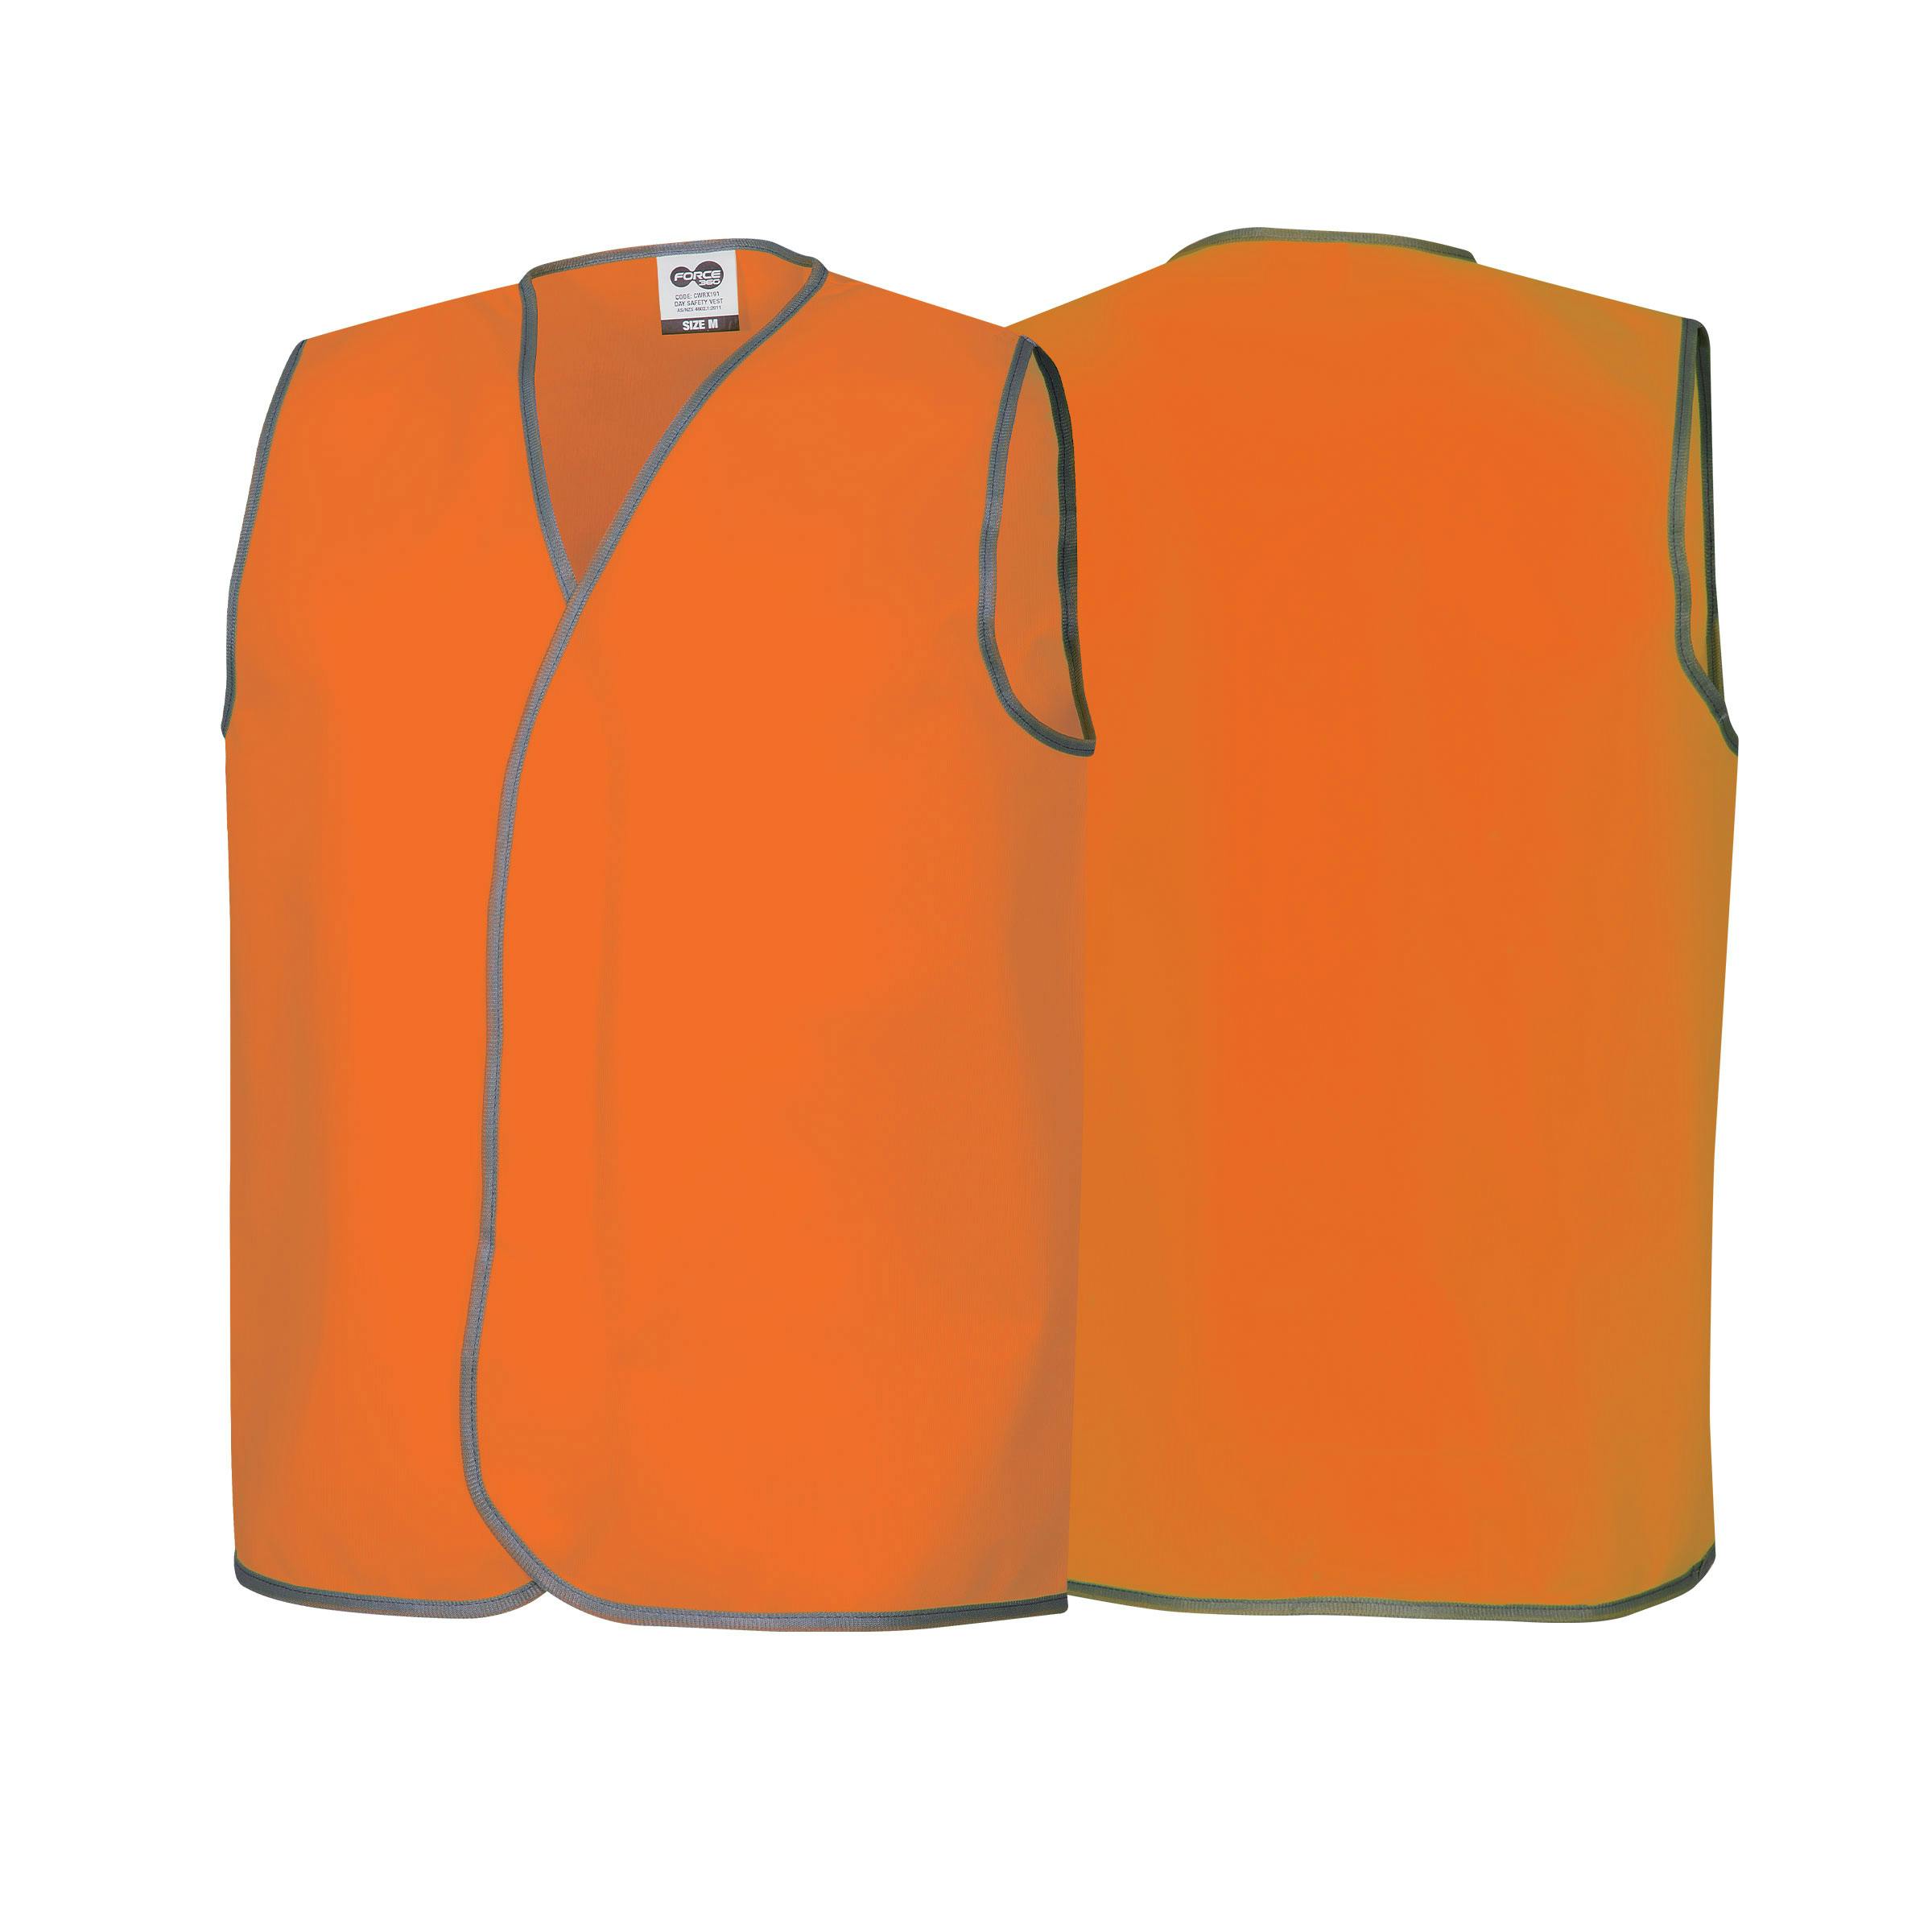 Force360 Orange Day Safety Vest (Hi-Vis Orange)